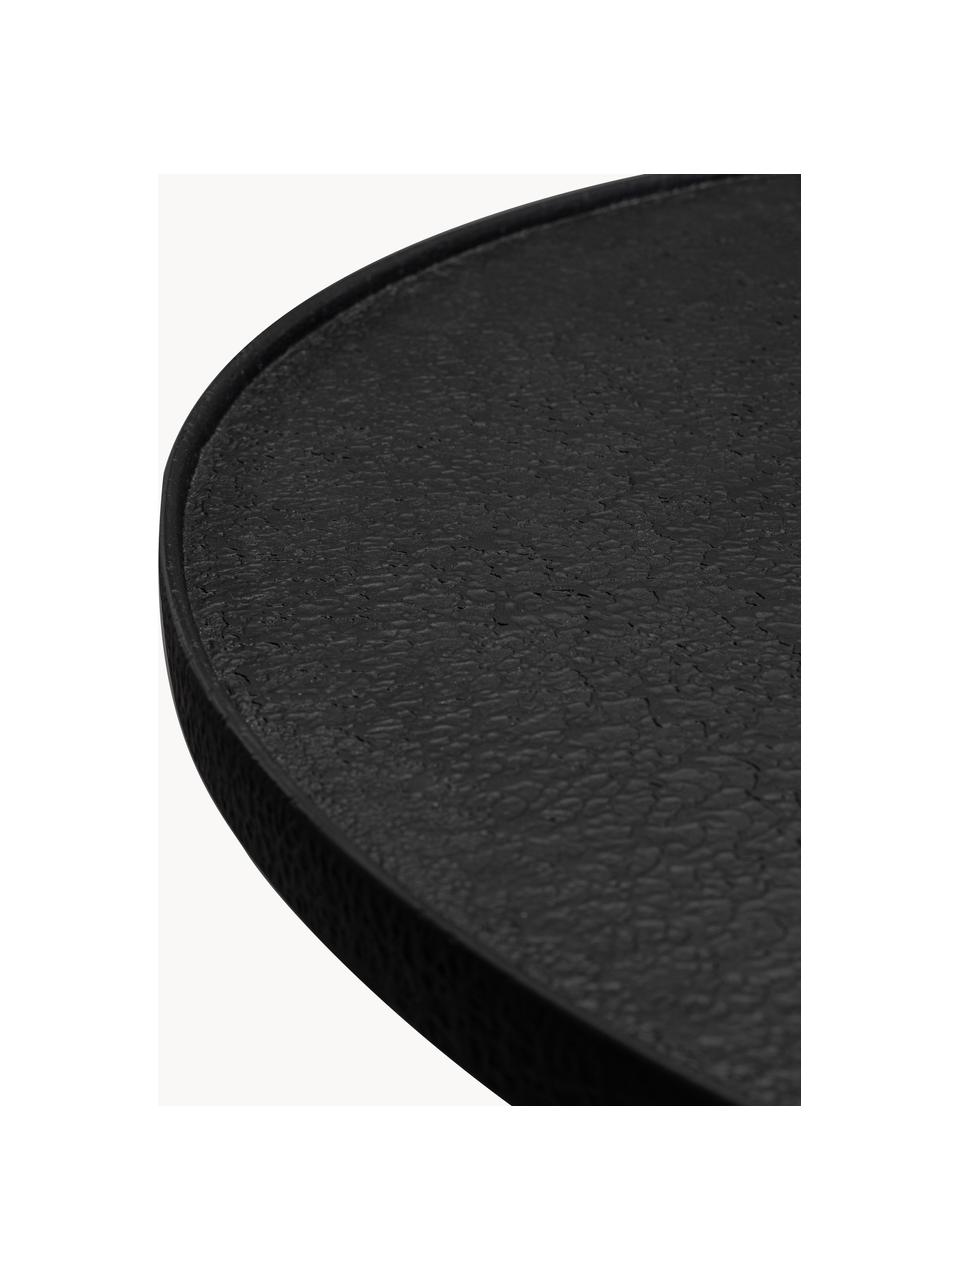 Table basse ronde Winston, Noir, Ø 70 cm